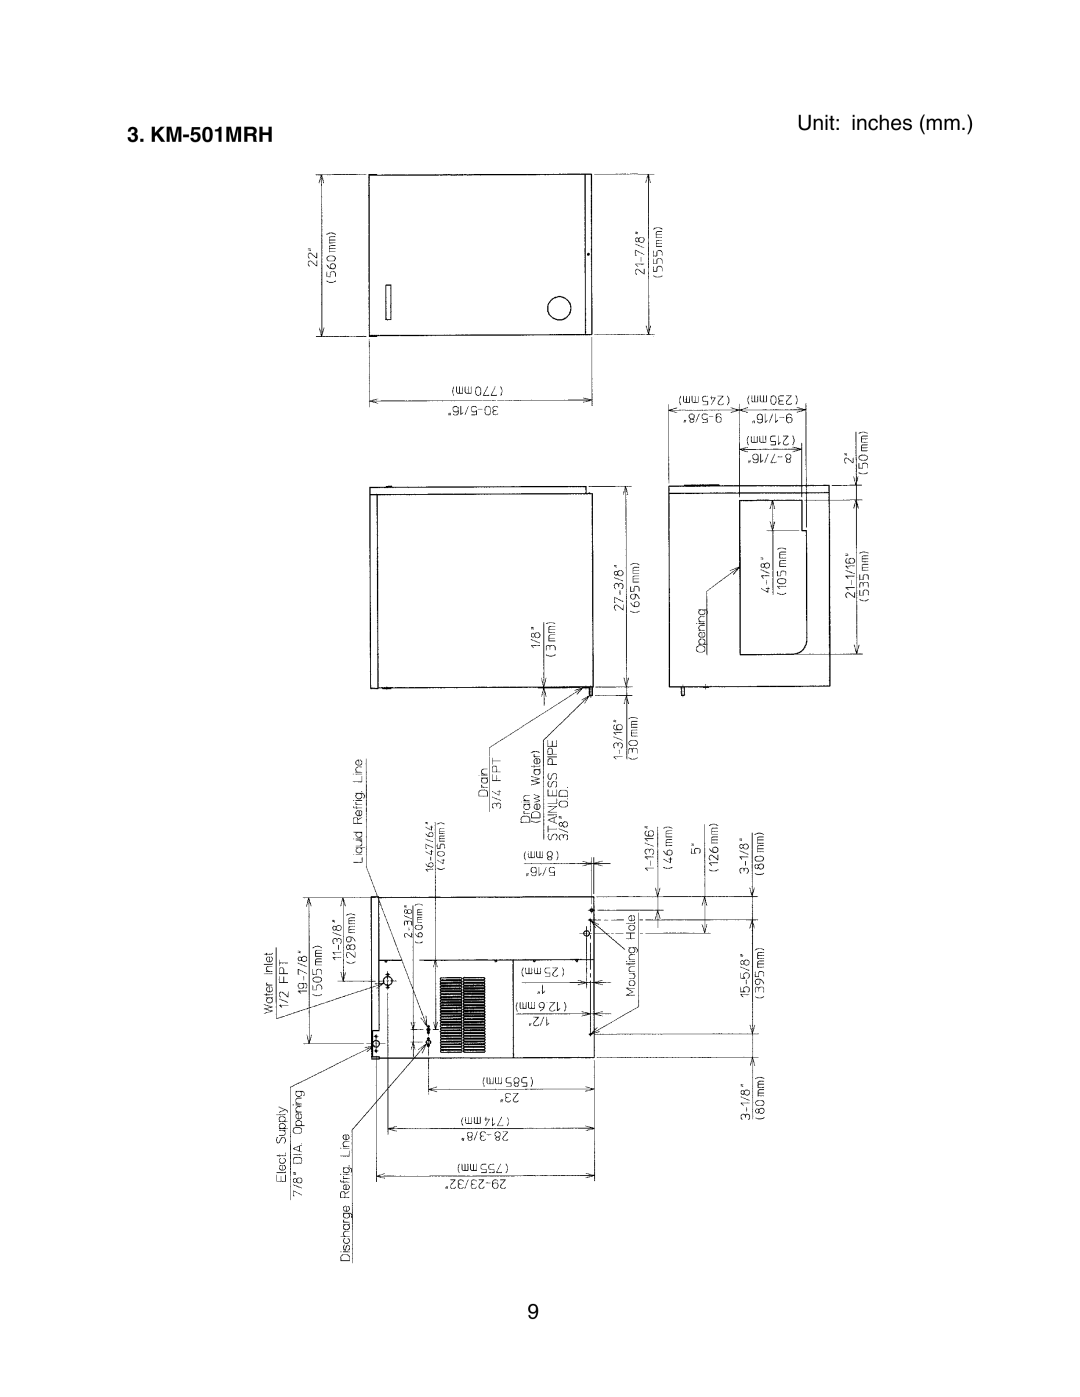 Hoshizaki KM-501MWH instruction manual KM-501MRH, Unit inches mm 